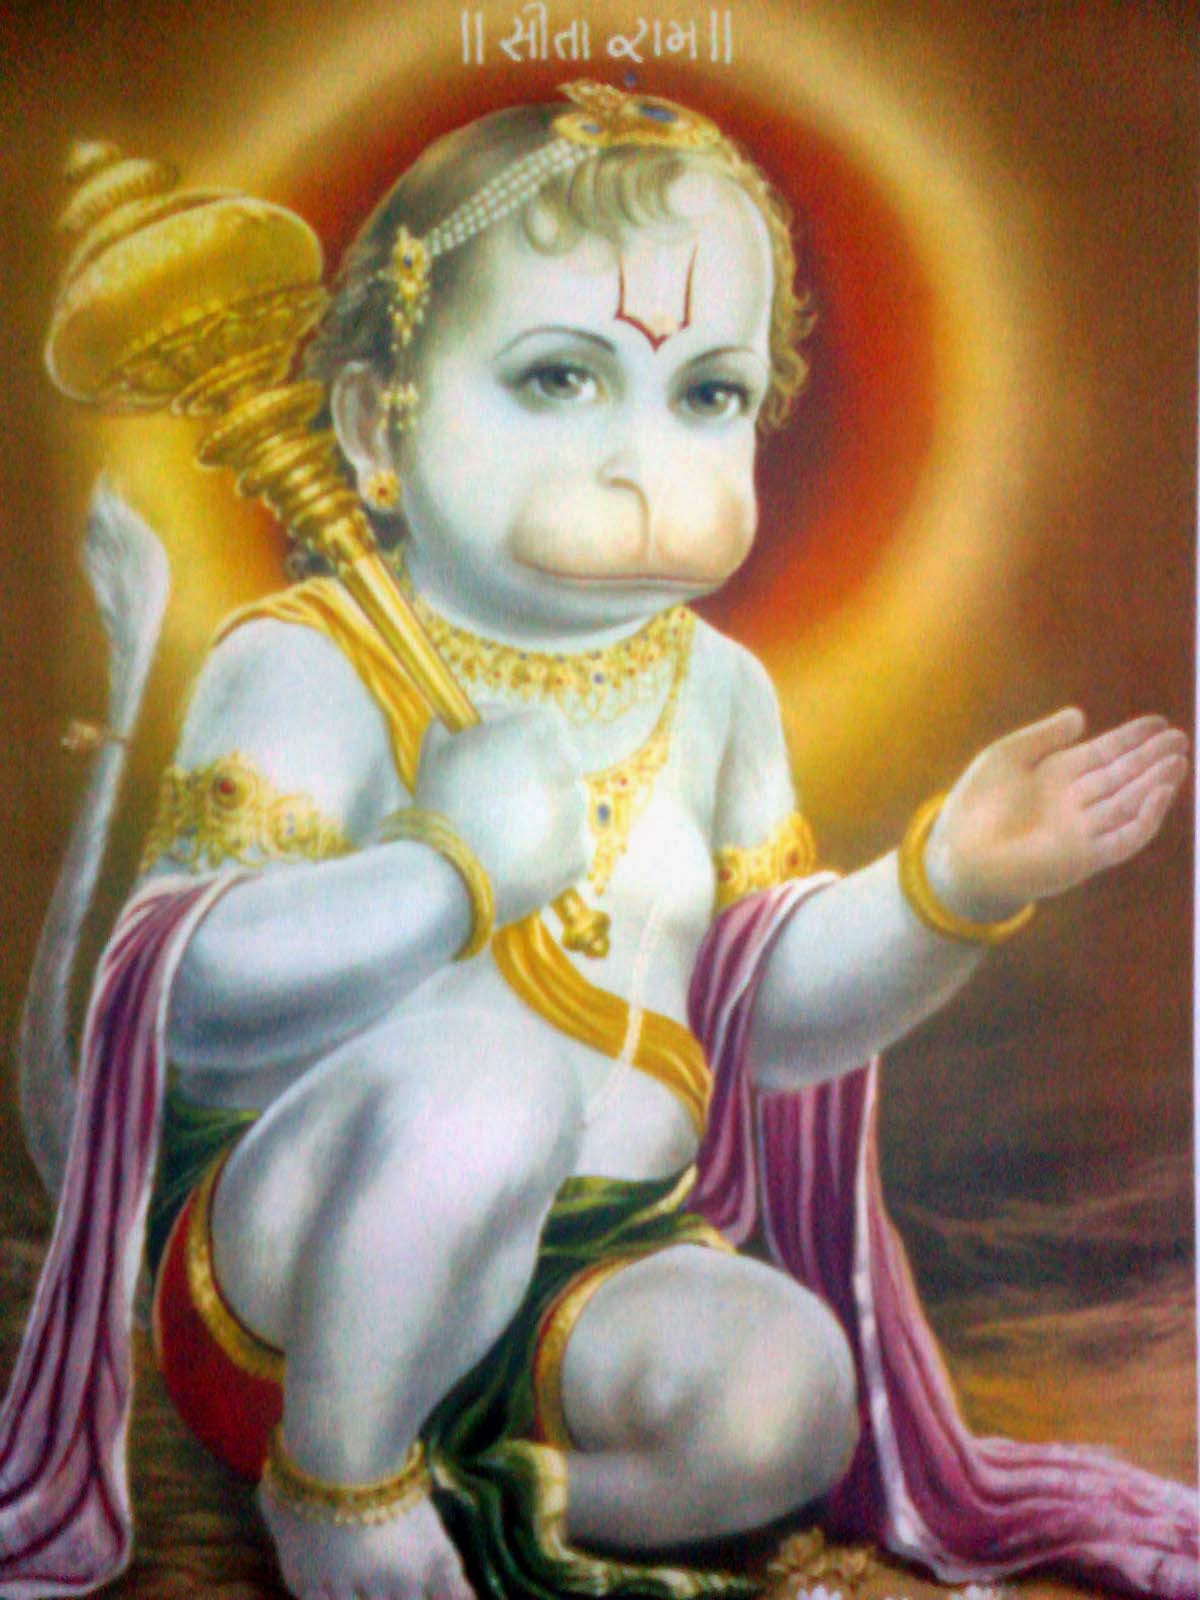 49+] Baby Hanuman Wallpapers - WallpaperSafari